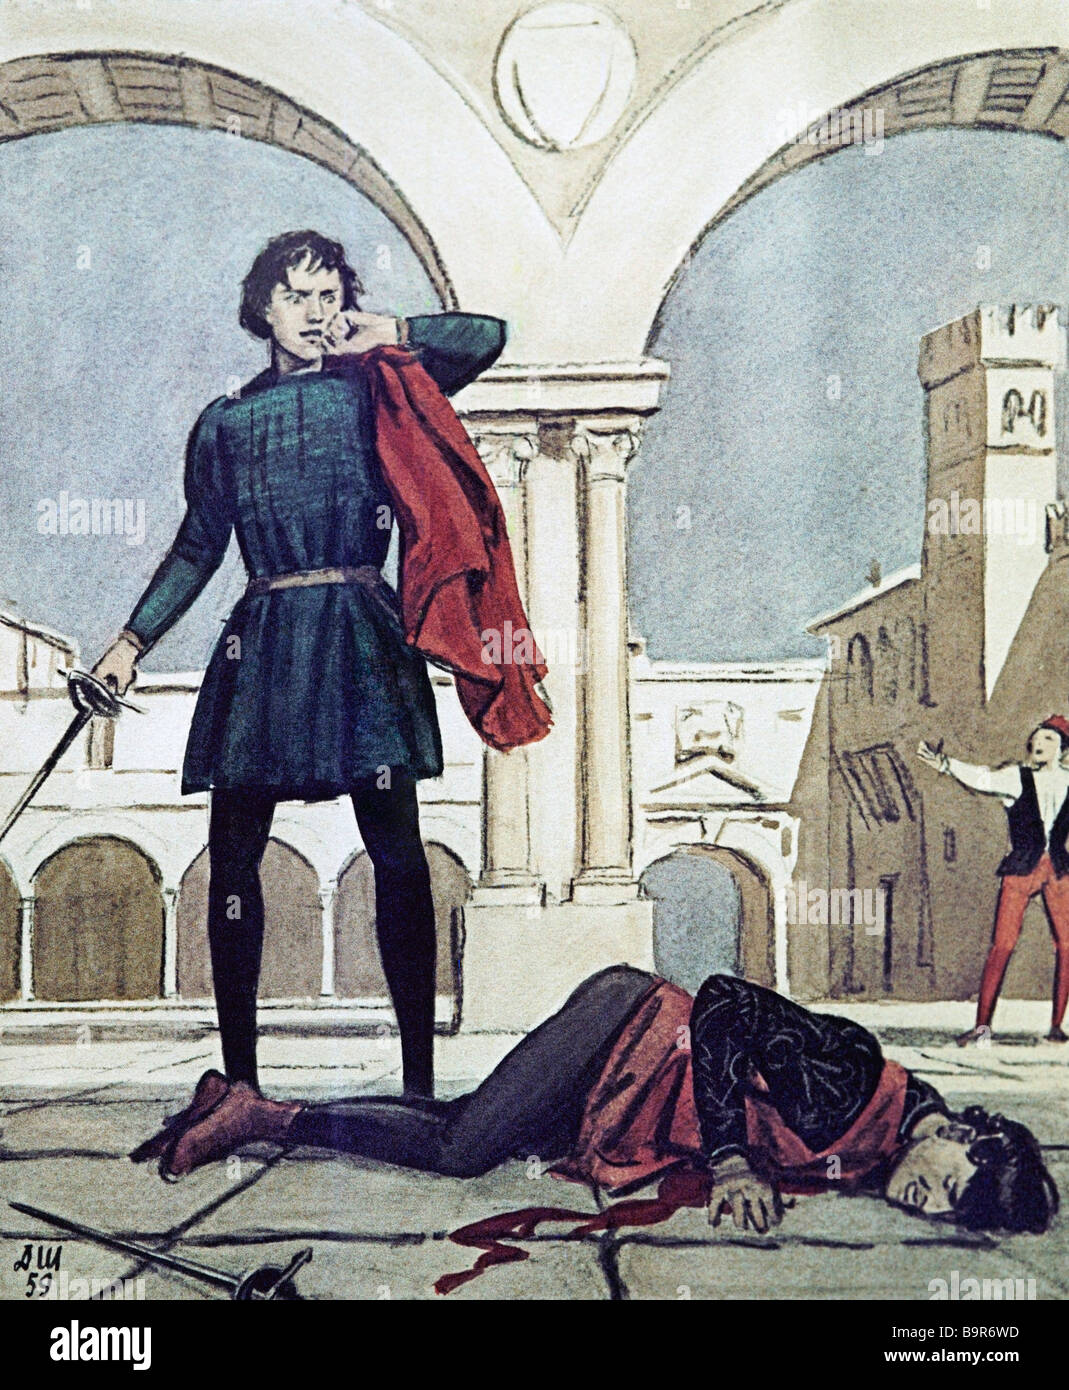 La mort de Tybalt par Dementy Shmarinov 1907 1999 Illustration de la tragédie de Shakespeare, Roméo et Juliette Banque D'Images